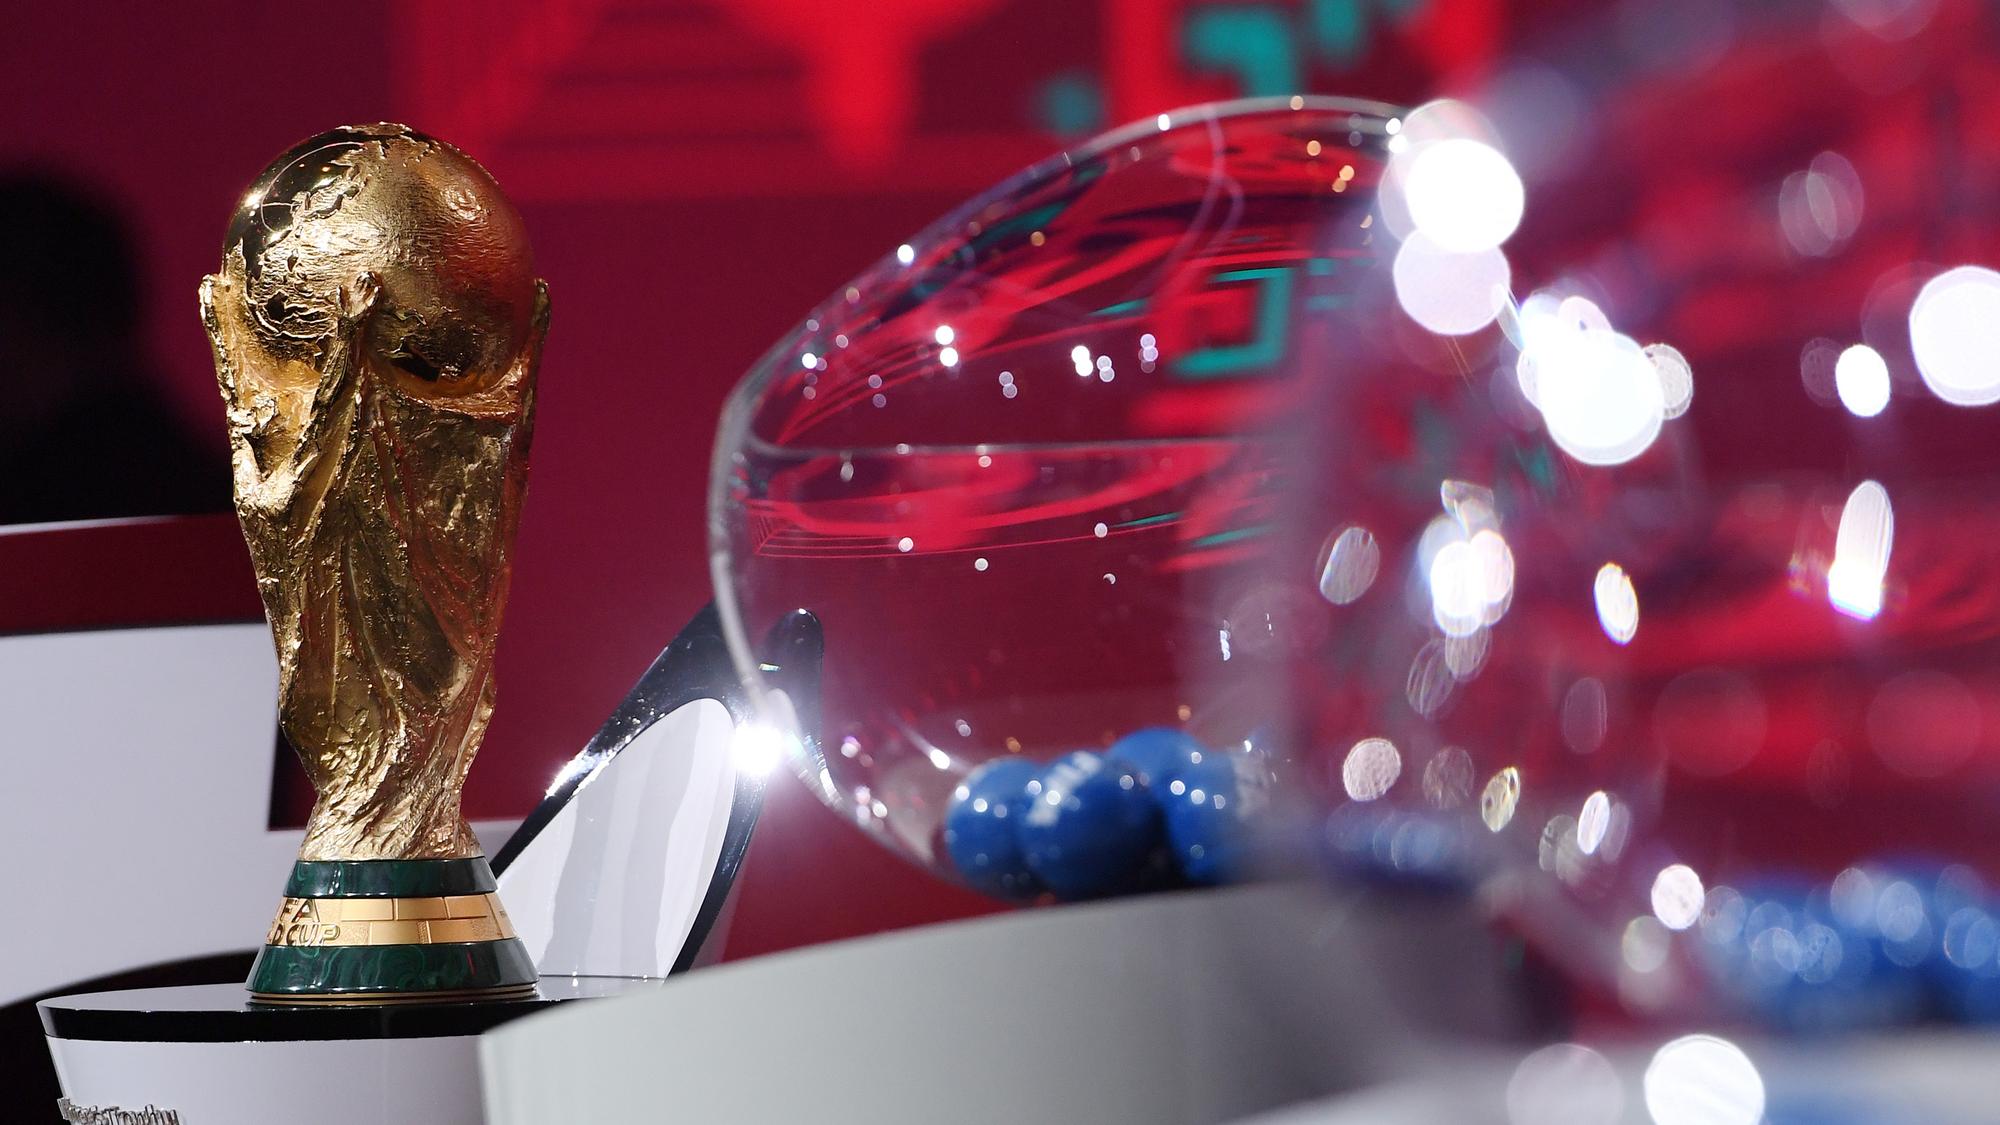 ONLINE: Žreb baráže o MS 2022 vo futbale v Katare | Šport.sk